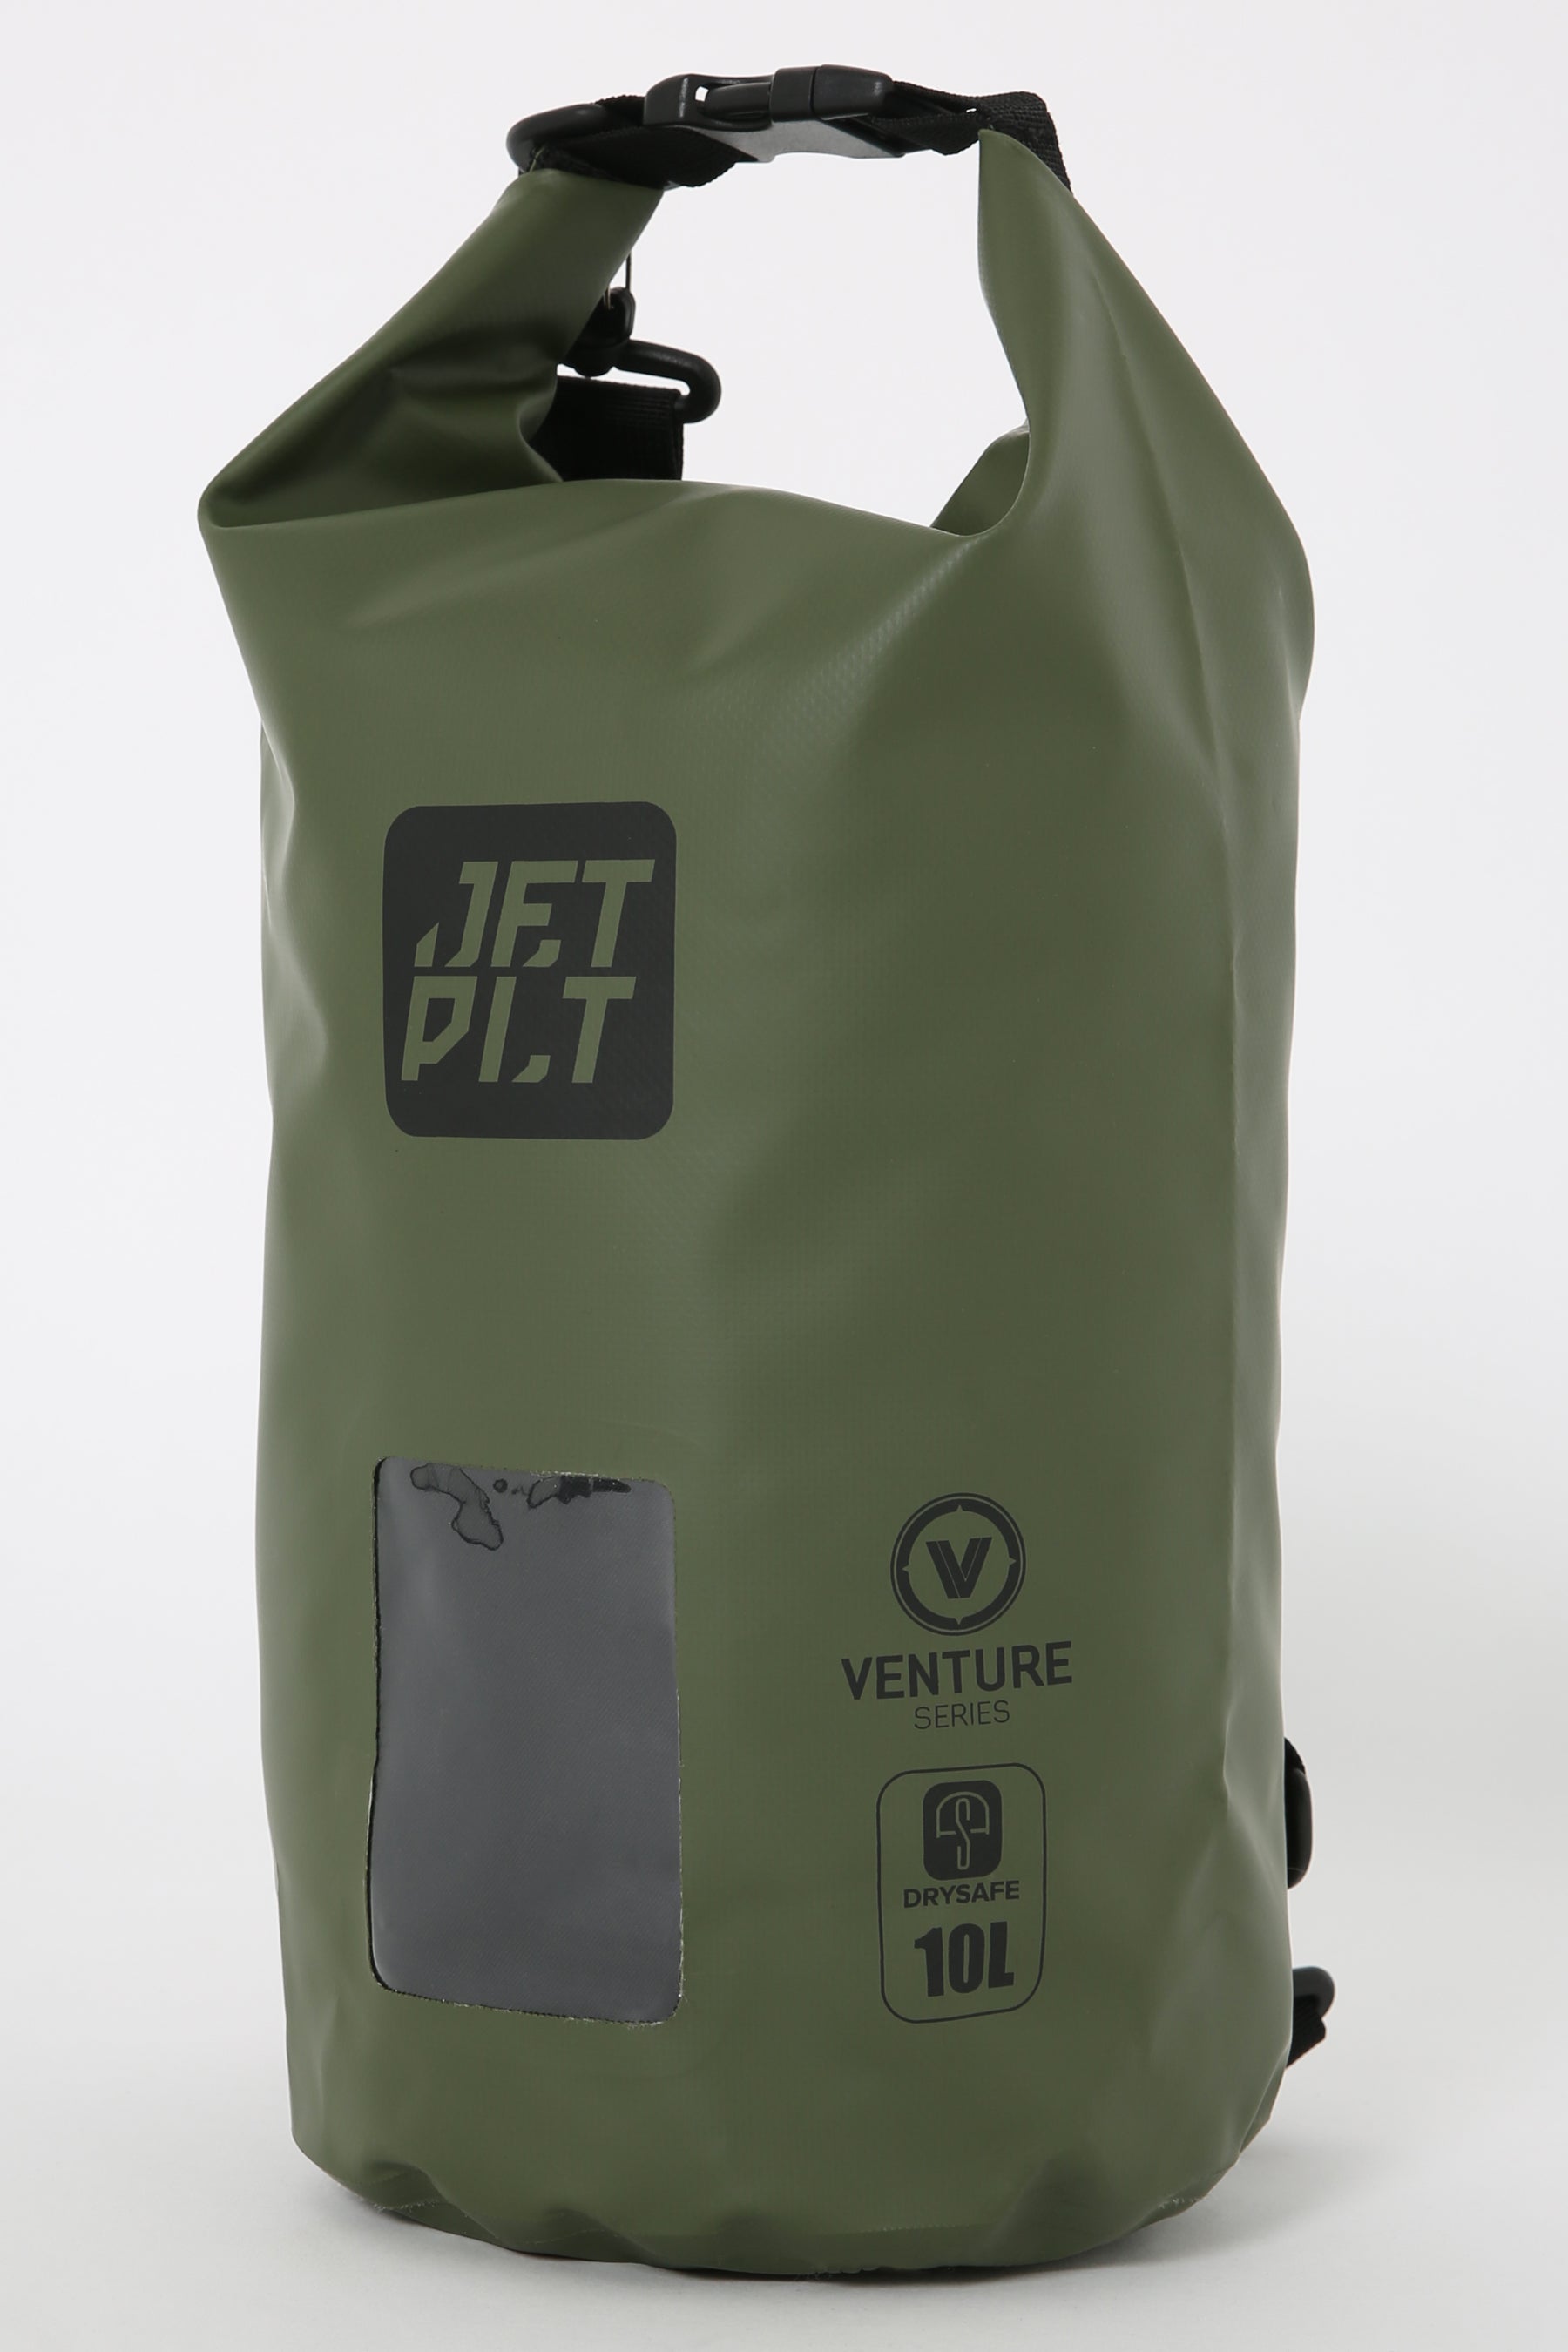 Jetpilot Venture 10l Drysafe Backpack - Sage Lifestyle 7